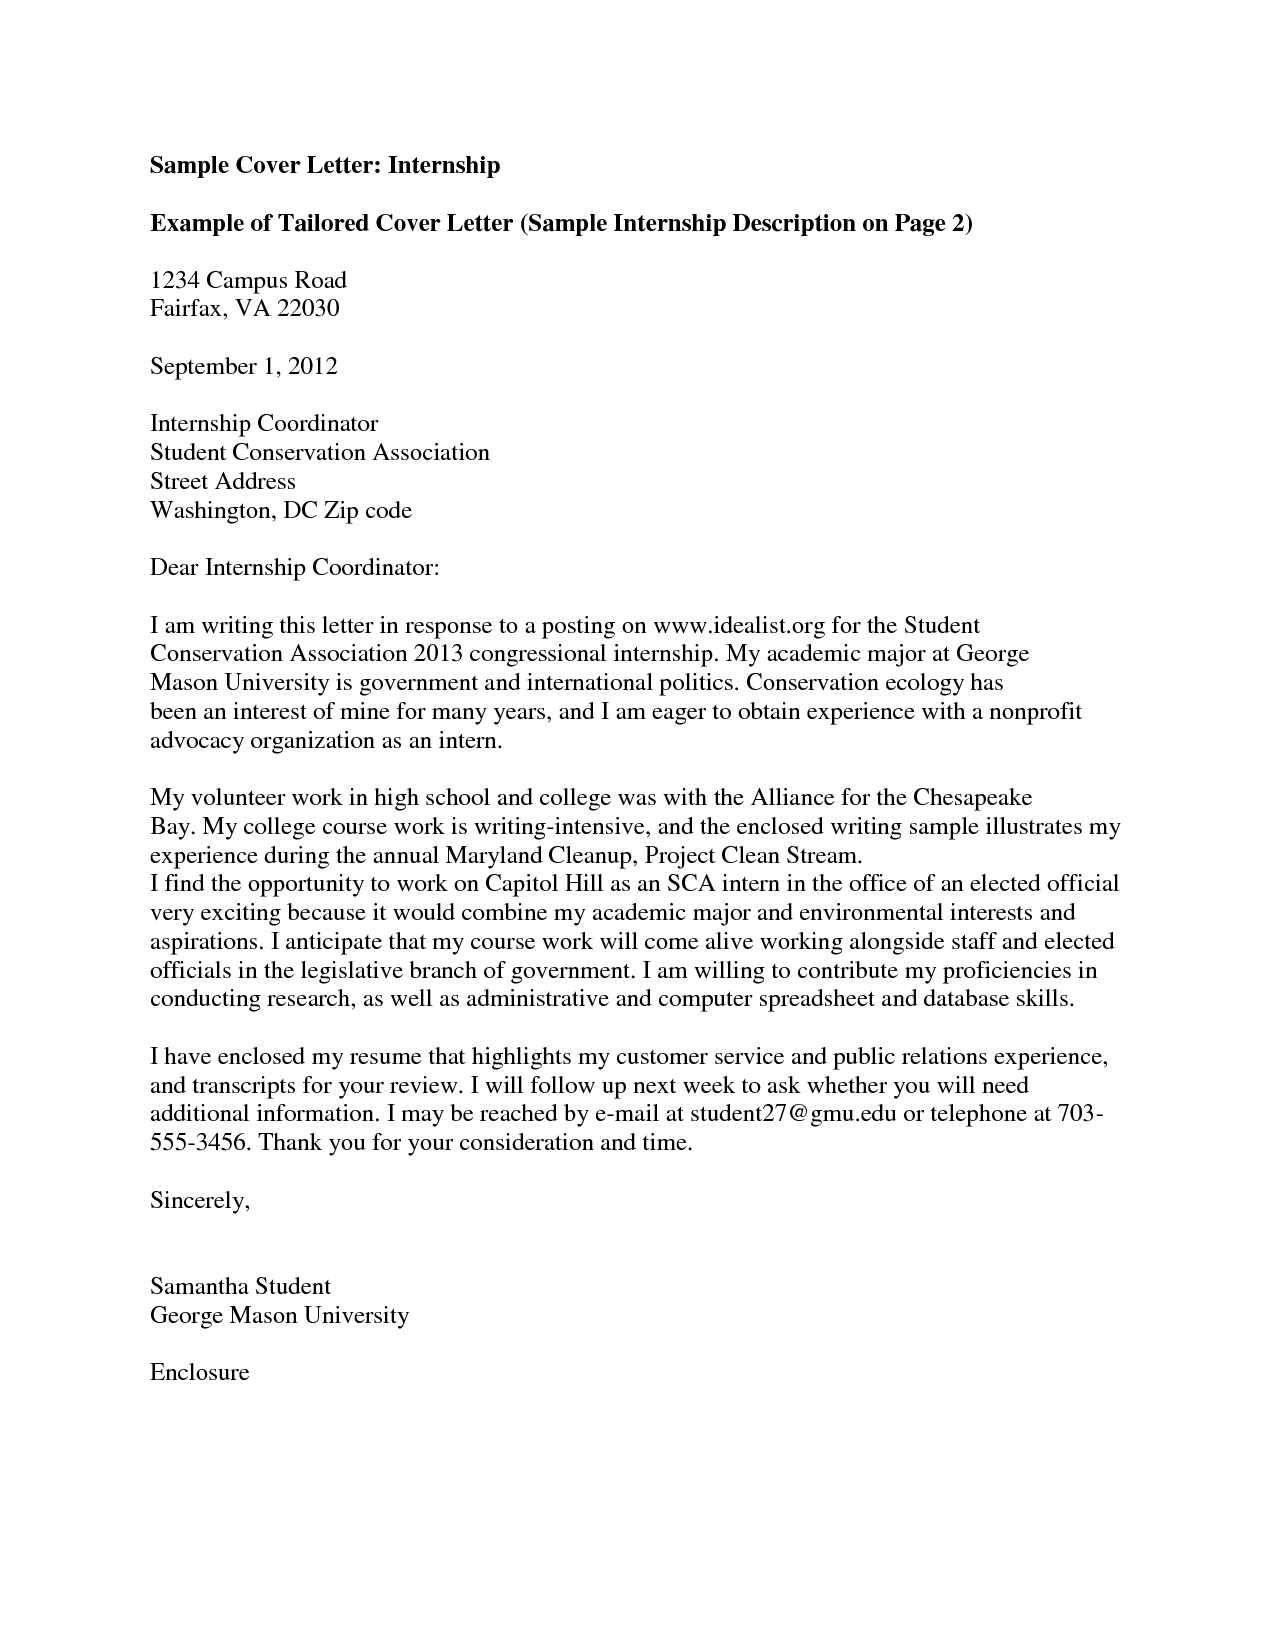 Cover Letter Template University  Letter Templates  Cover Letter within Advocacy Letter Template